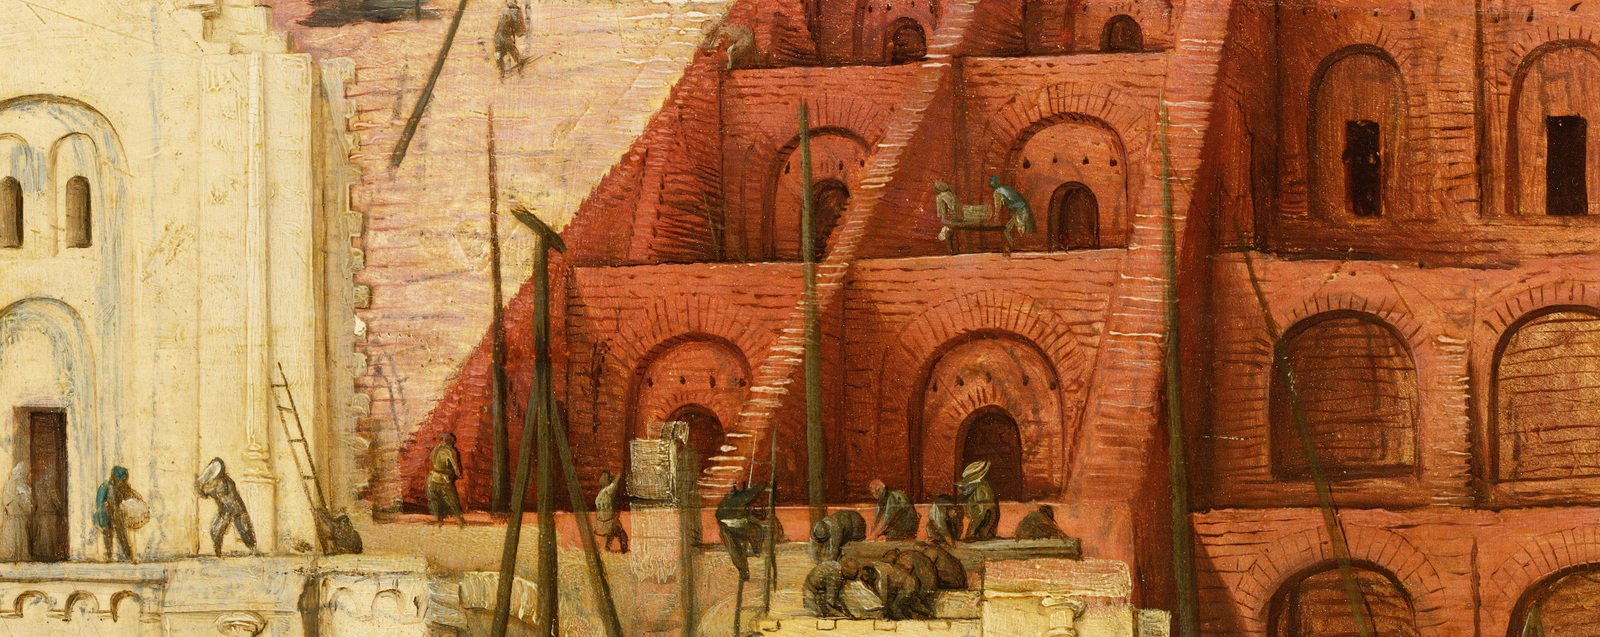 Иллюстрация: Питер Брейгель старший. Вавилонская башня. Фрагмент. 1563